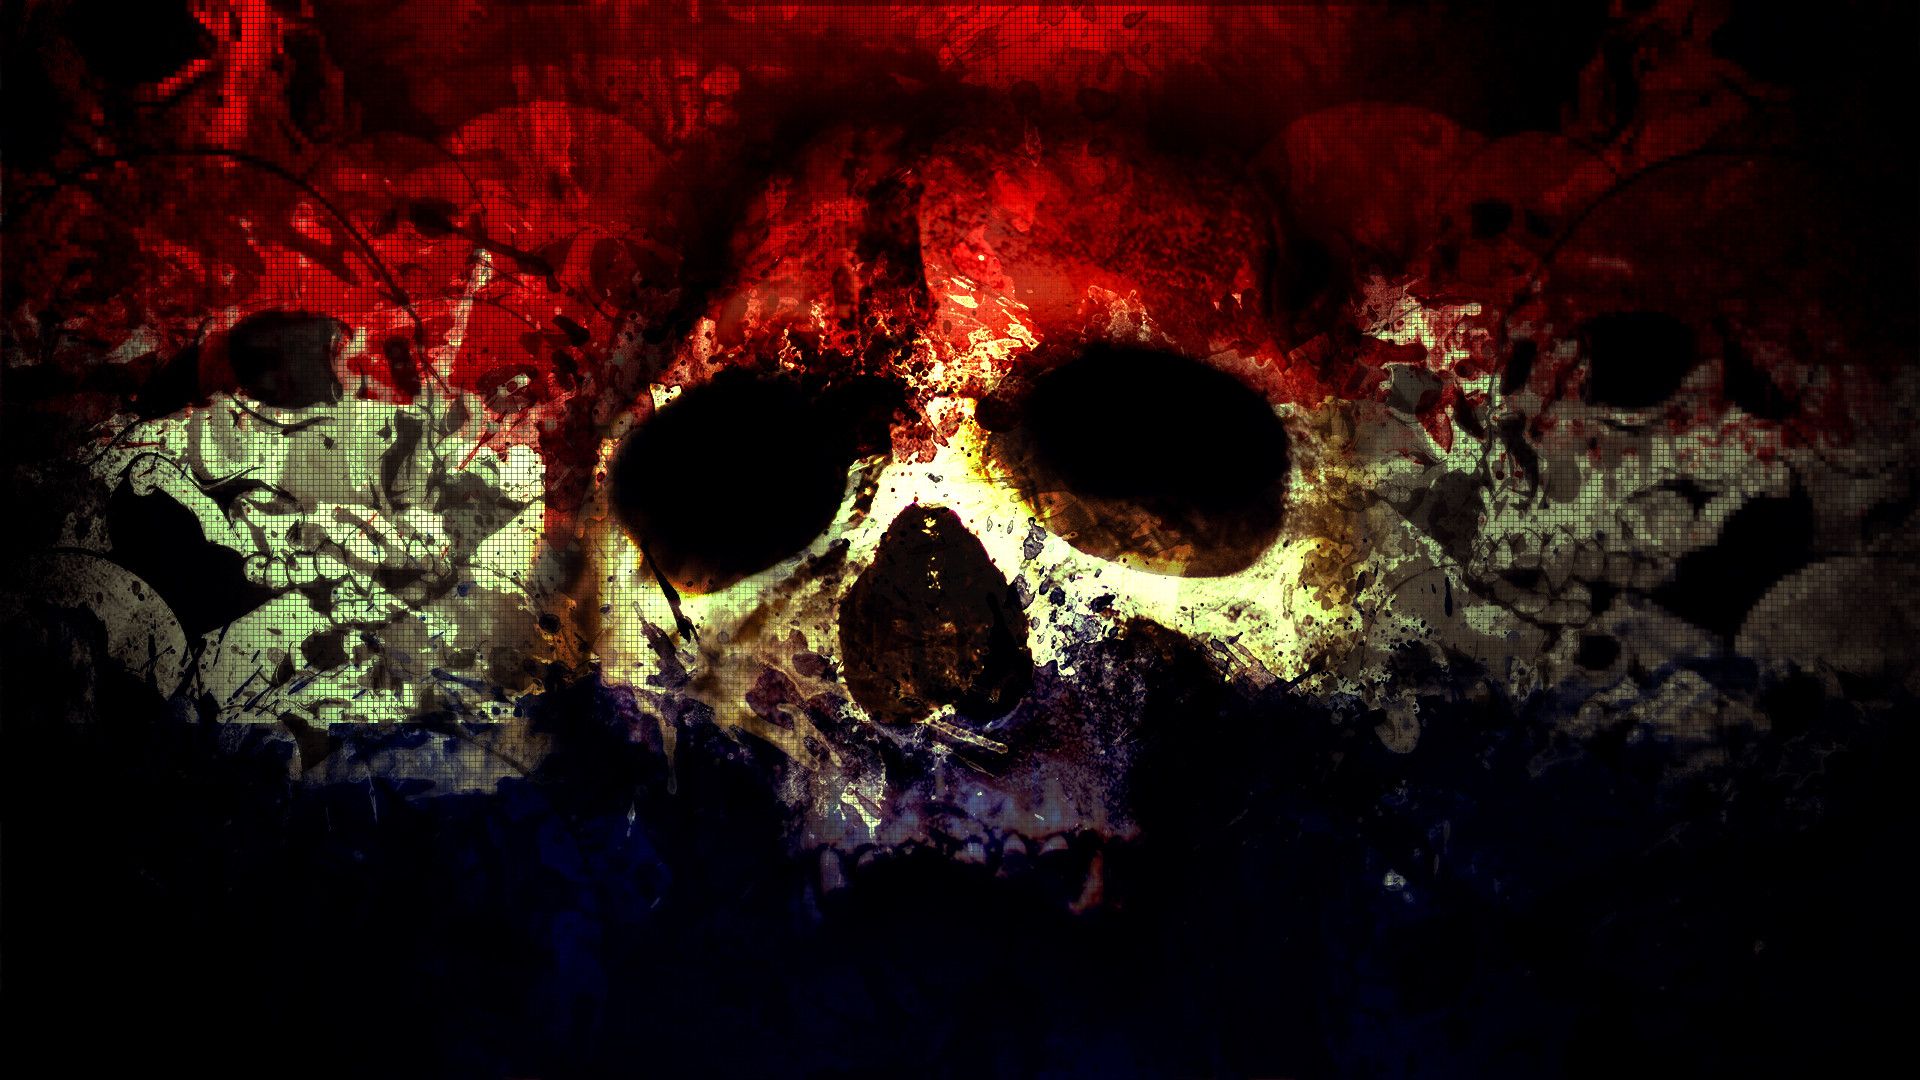 HDq Skull Wallpaper Desktop 4k High Definition